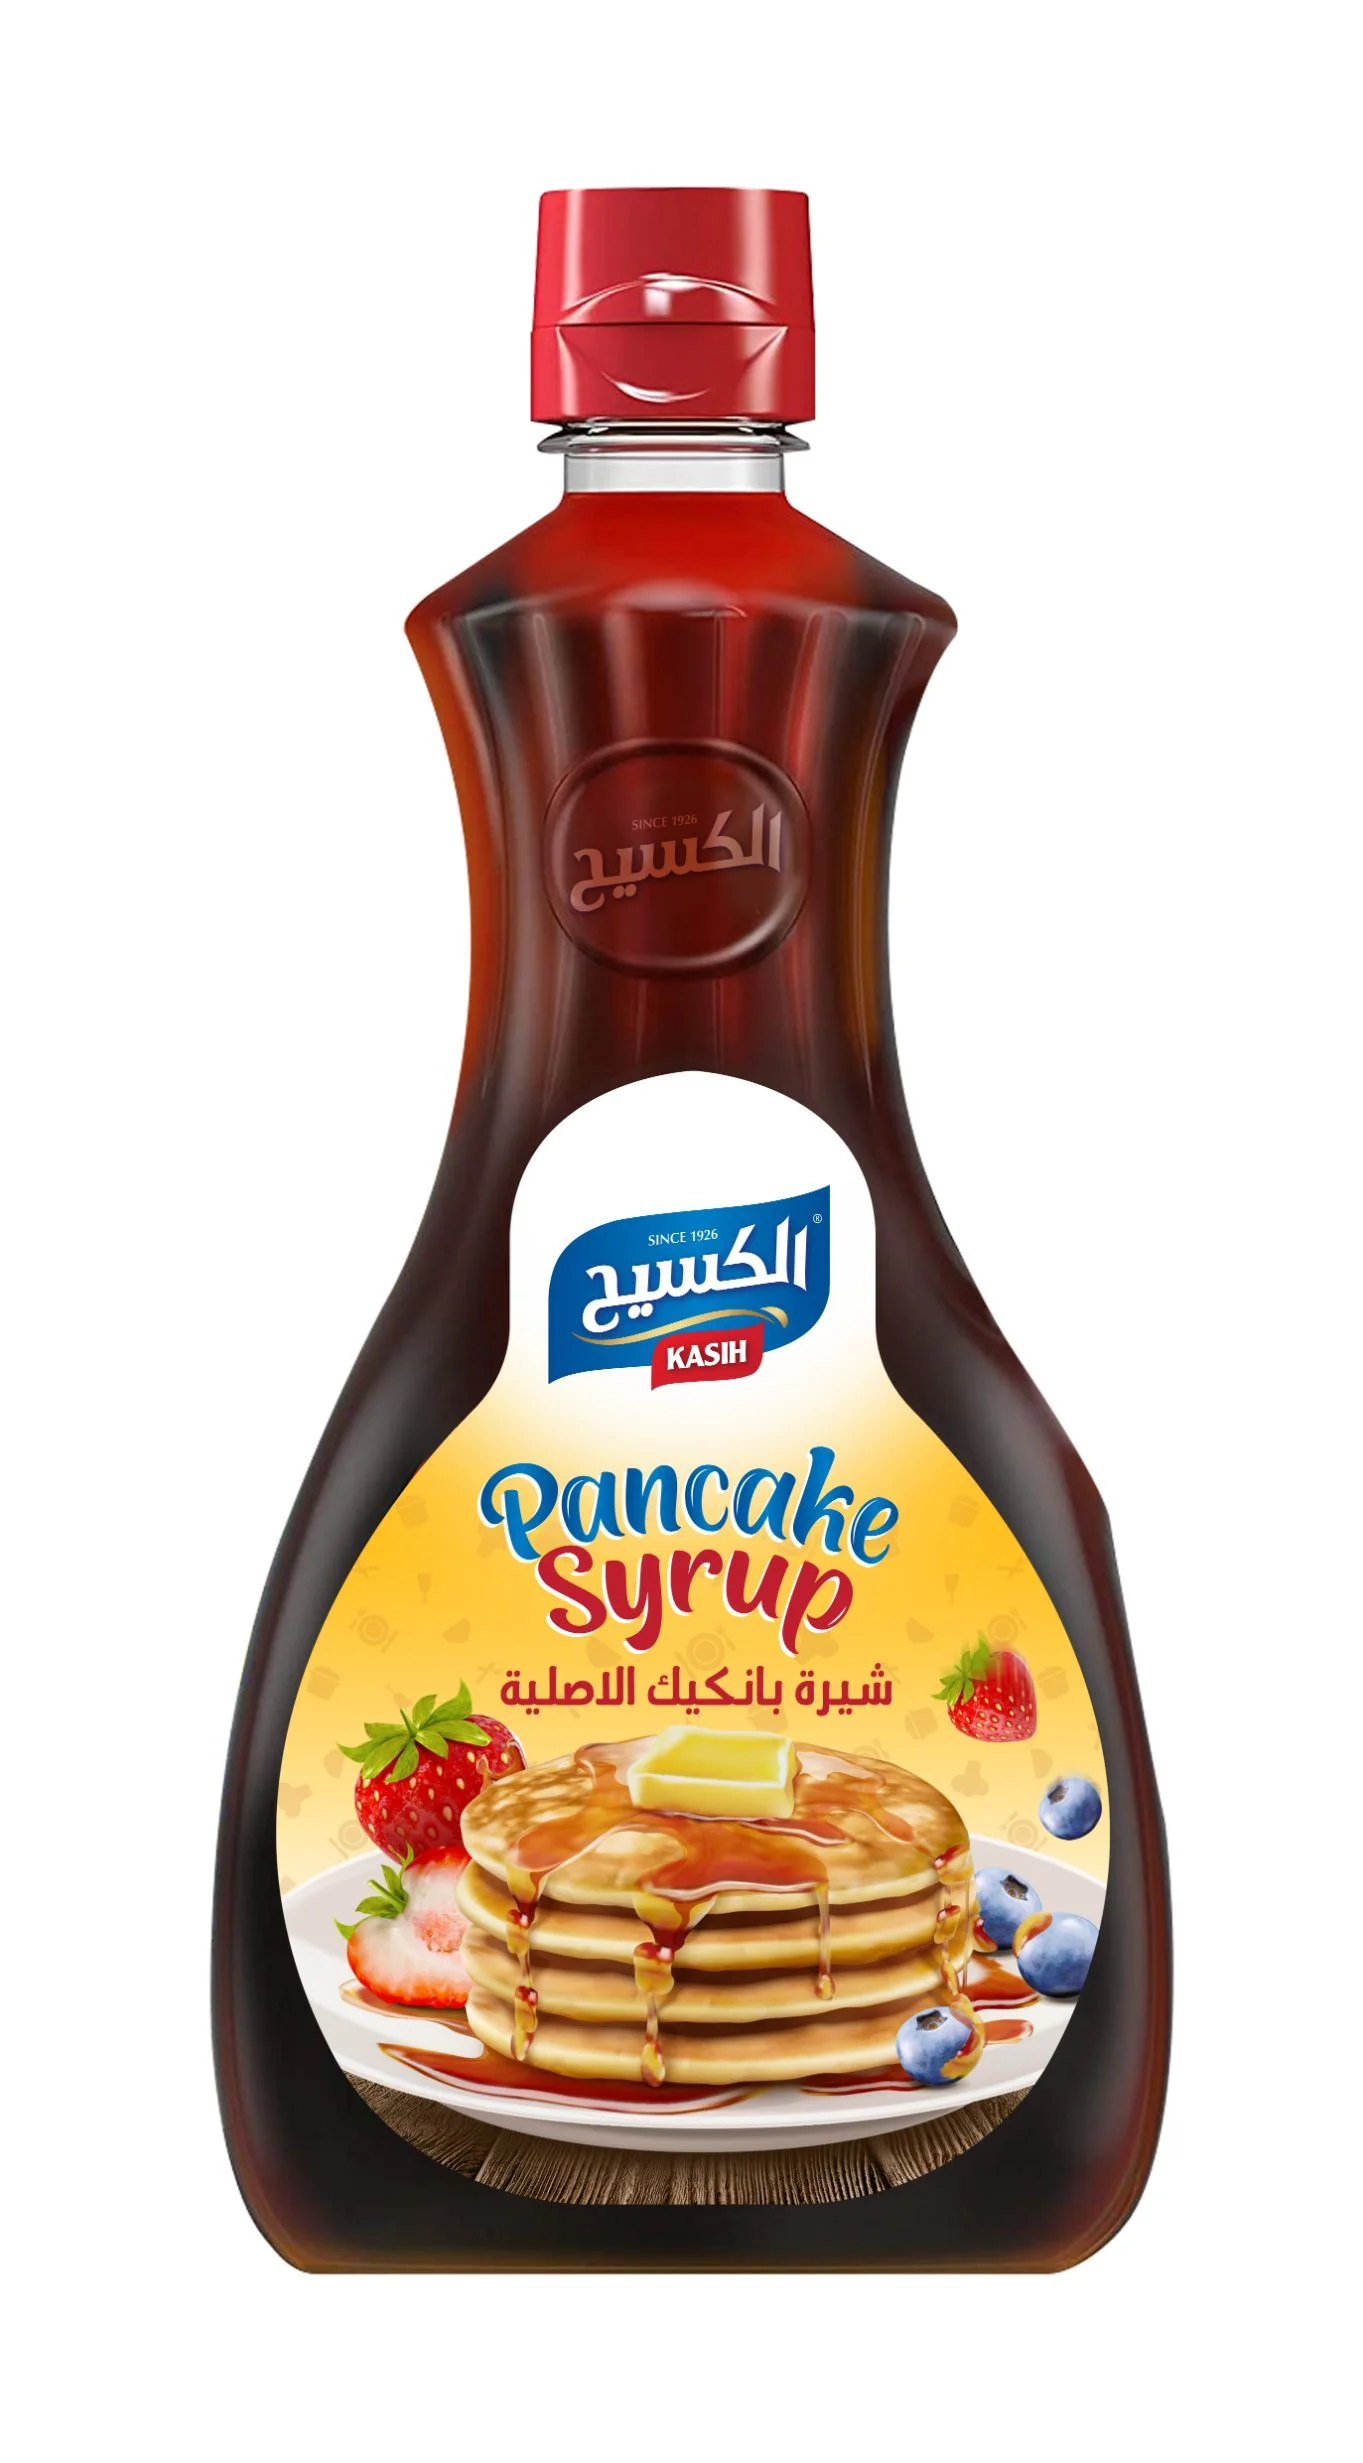 KASIH Pancake syrup